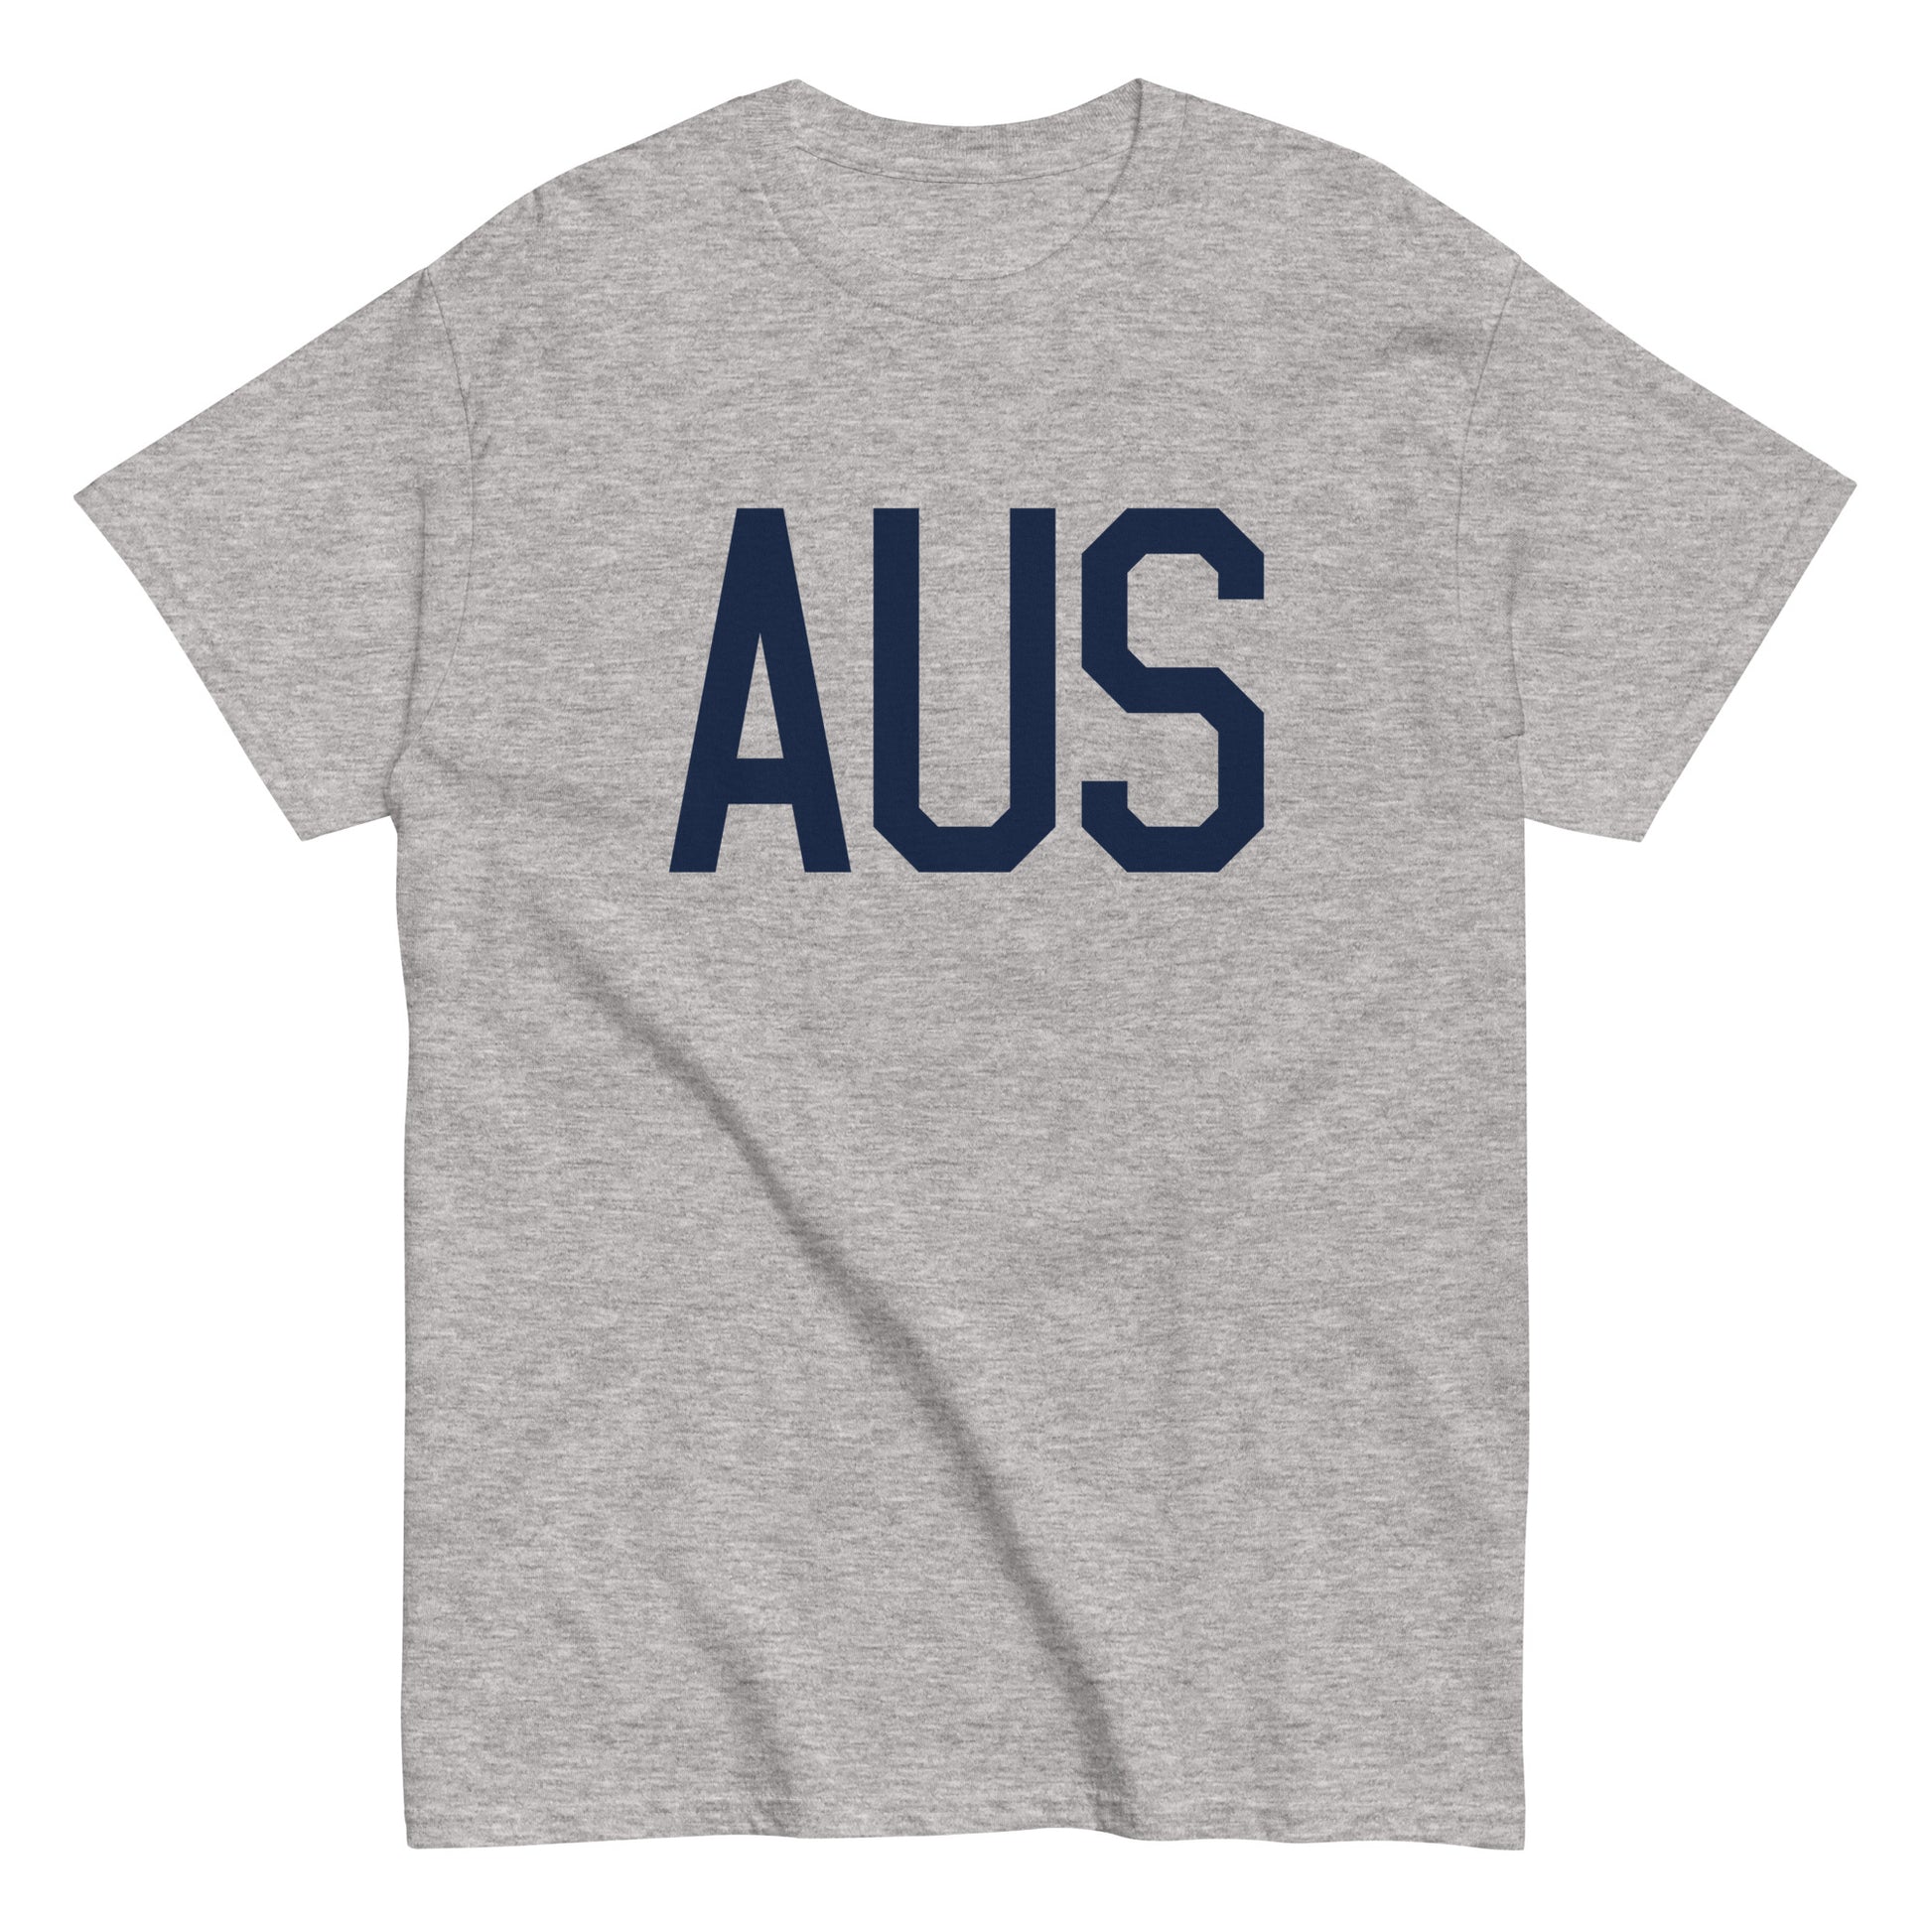 Aviation-Theme Men's T-Shirt - Navy Blue Graphic • AUS Austin • YHM Designs - Image 02